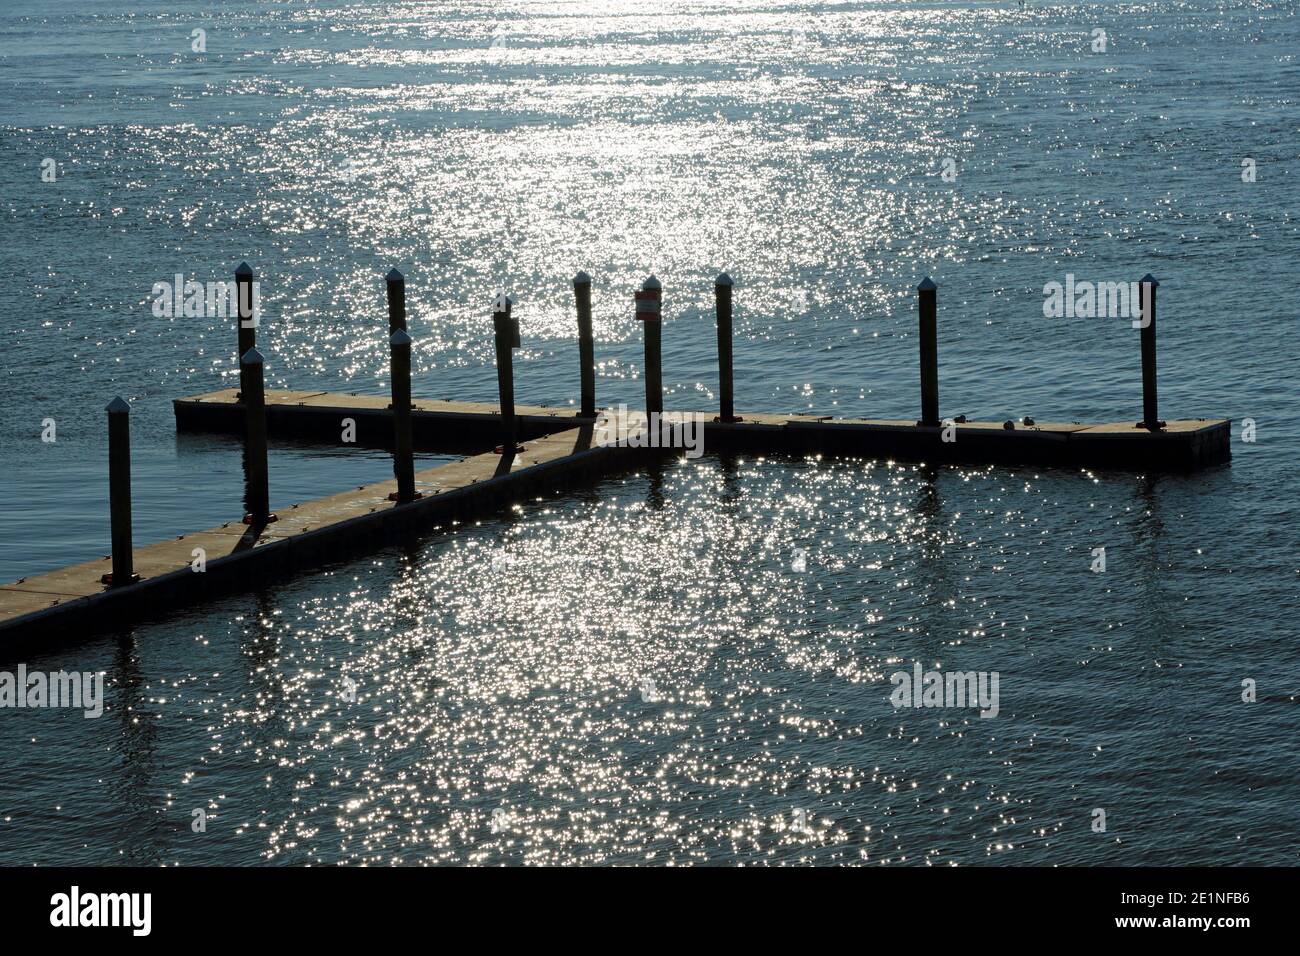 Ein leerer Bootsanleger verwandelt sich im Glanz der Sonne in ein inspirierende Kreuz. Sommers Point, New Jersey, USA Stockfoto